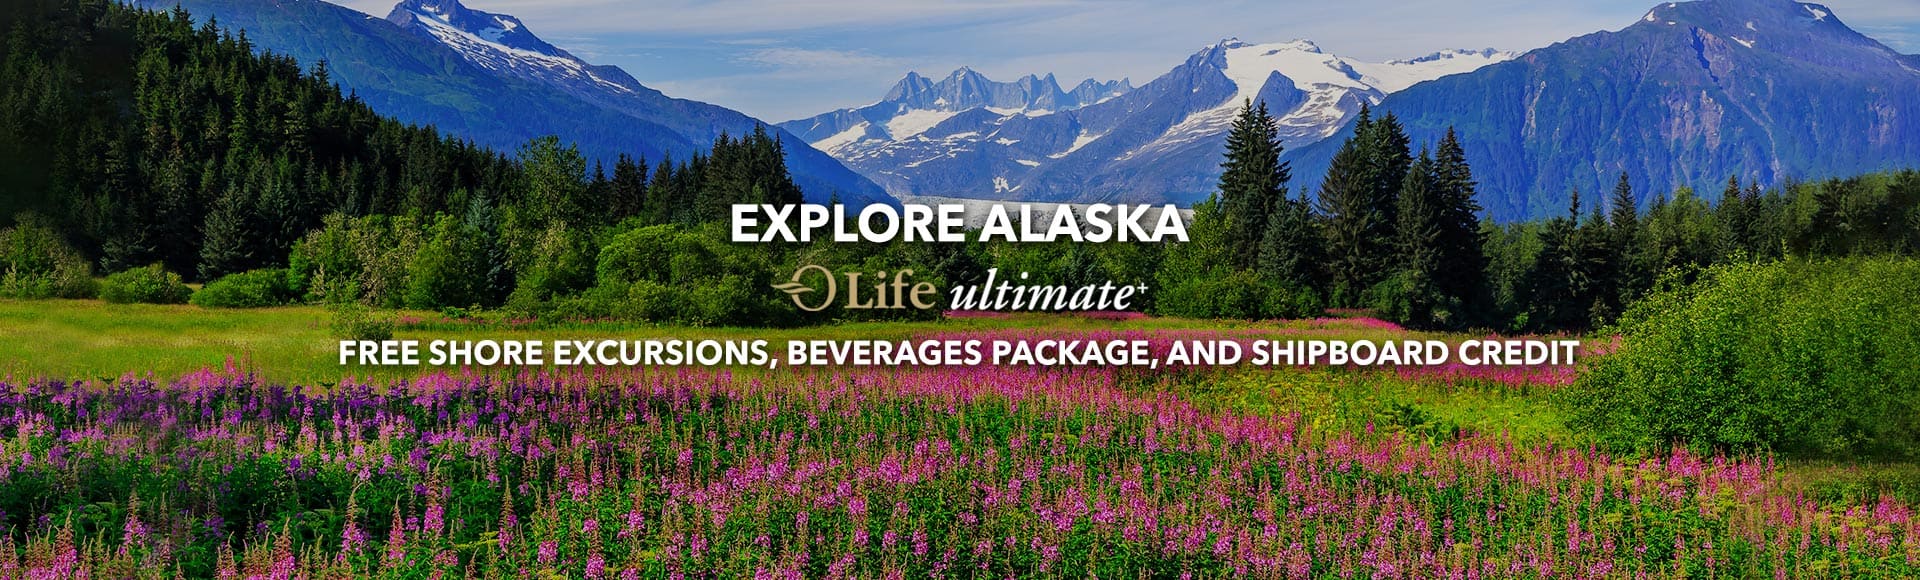 Explore Alaska